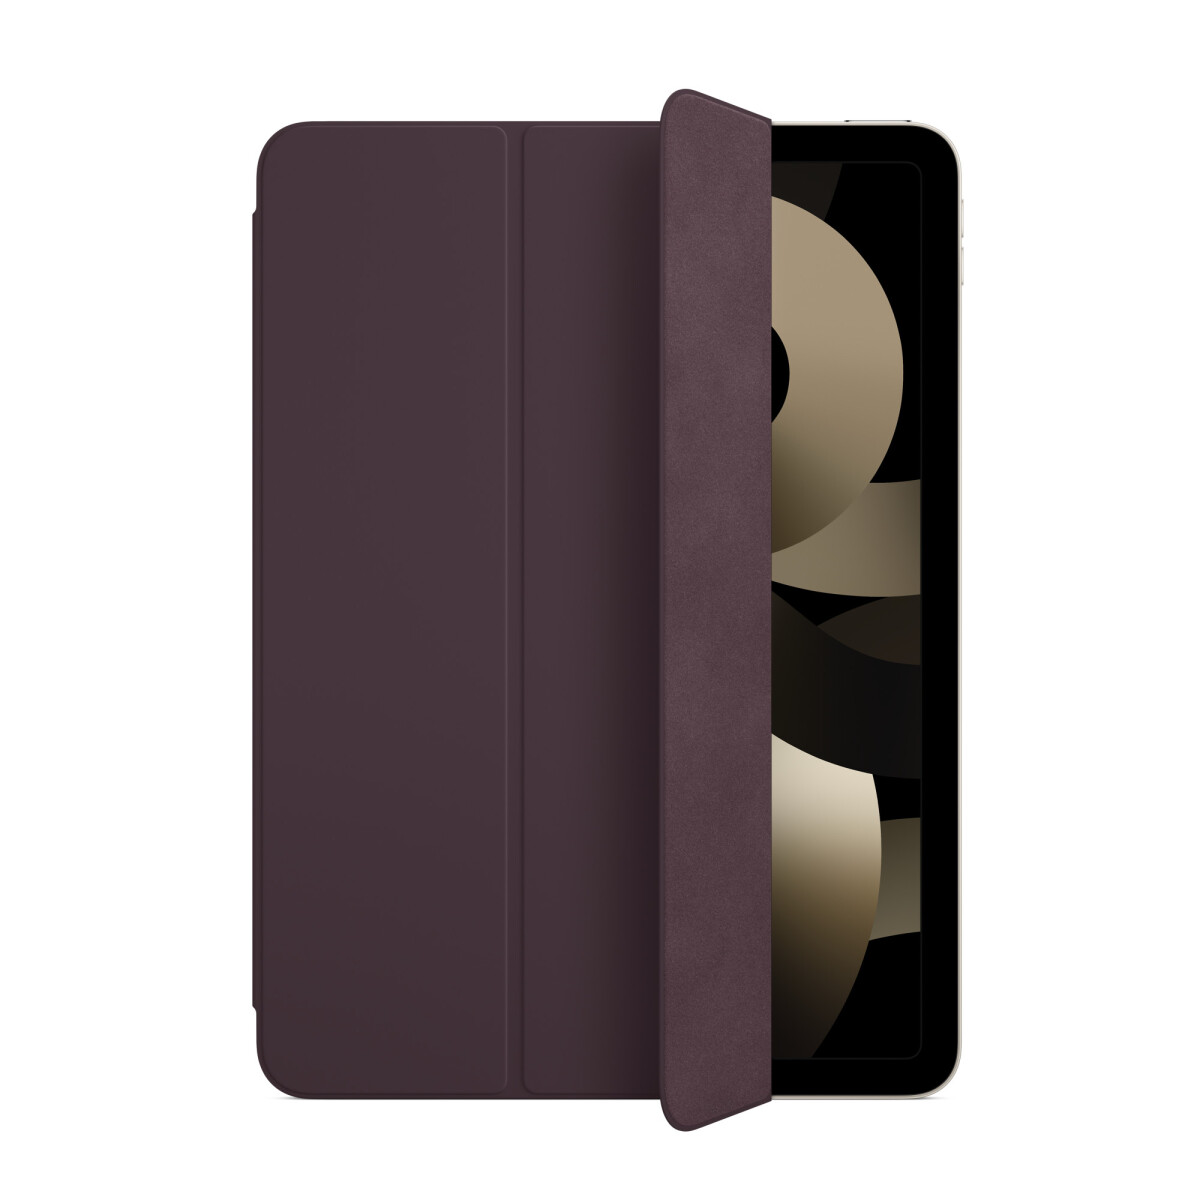 Funda Smart Folio para el iPad Air (4 y 5.ª generación) - Cereza oscura 